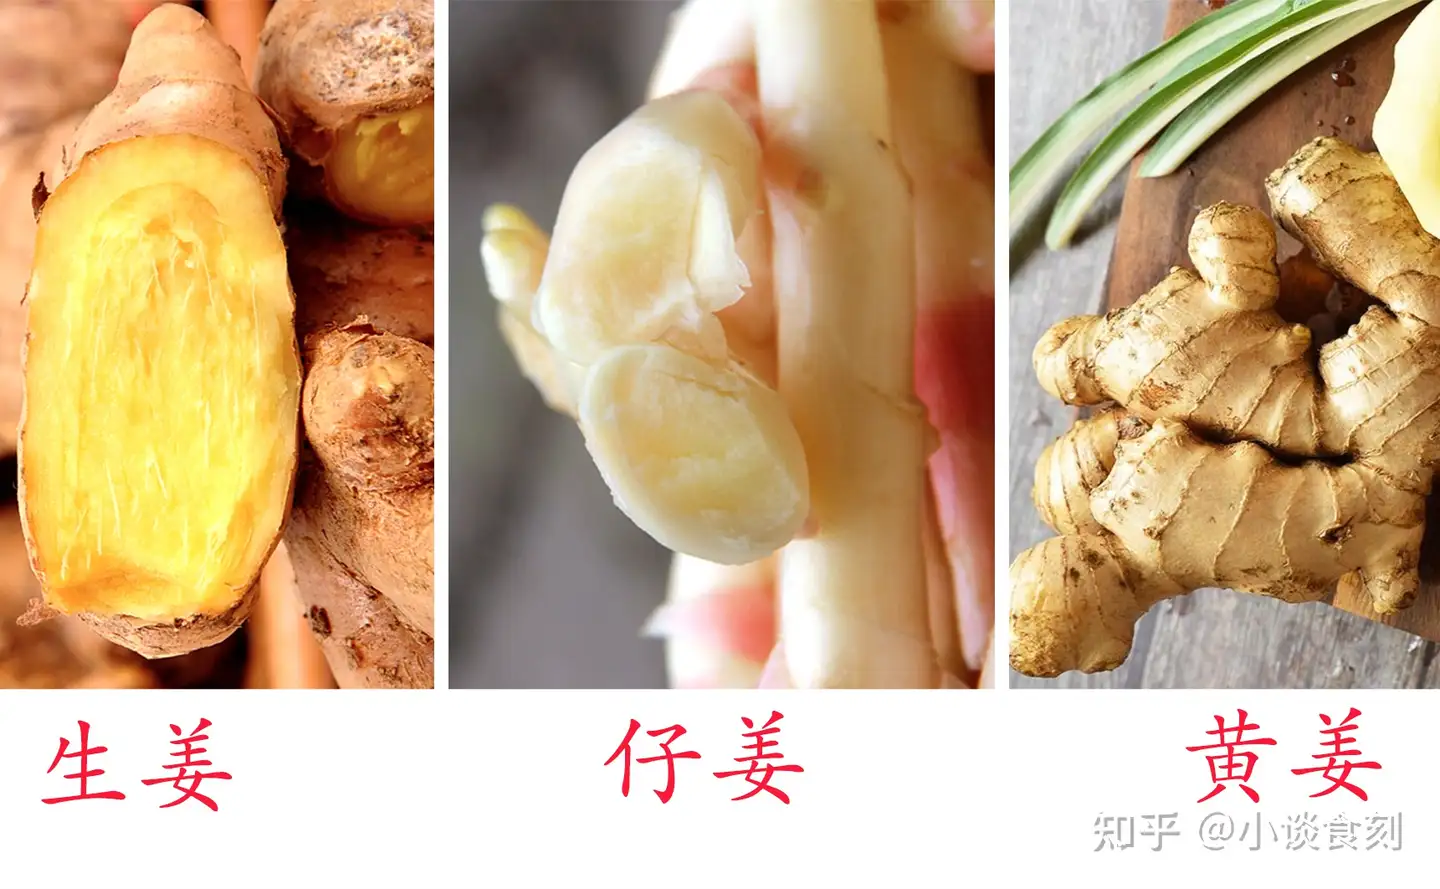 三伏吃姜 注意区分生姜 黄姜 子姜 差别很大 吃的时候要重视 知乎